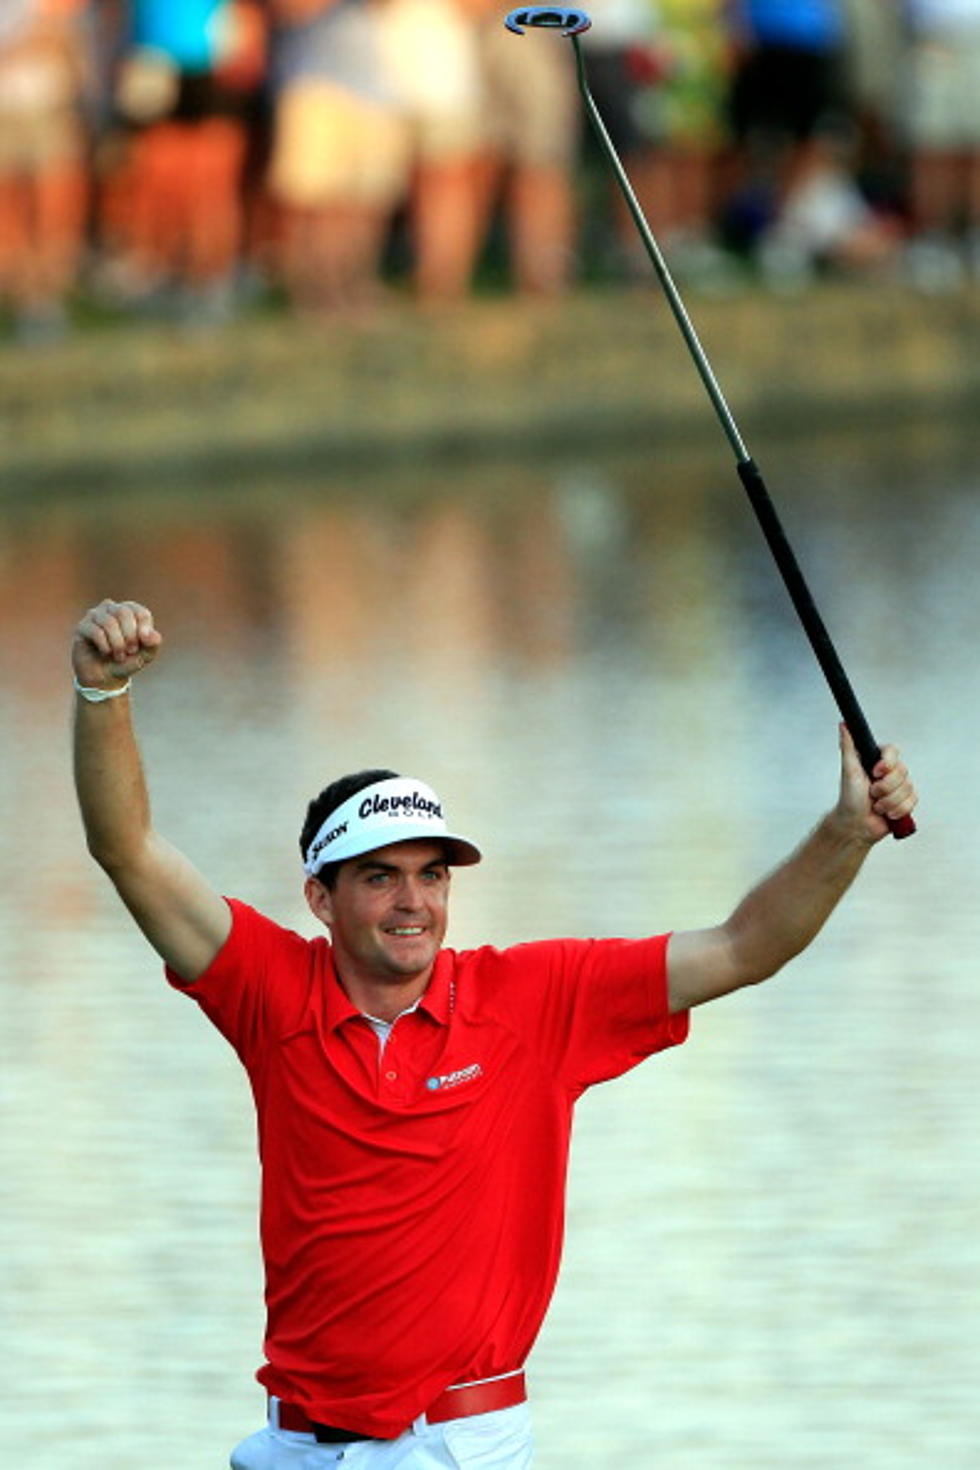 Bradley Wins PGA Championship In Playoff